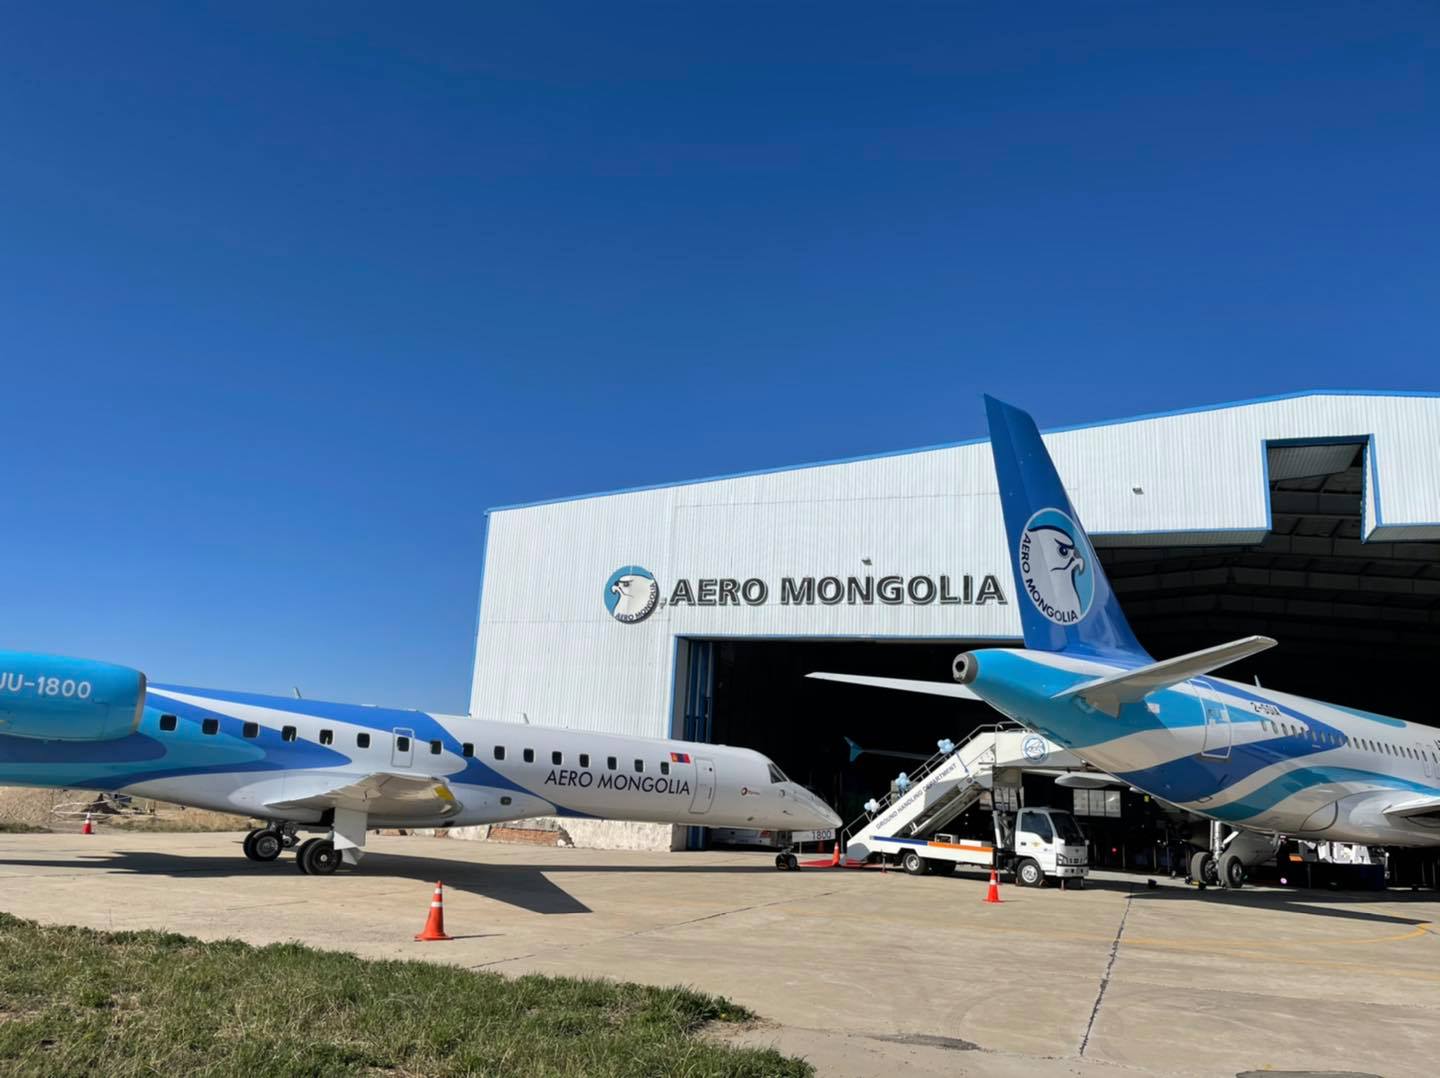 Б.Бат-Эрдэнэ гишүүн "Aero mongolia” компани “Aerobus 319” шинэ агаарын хөлгийг хүлээн авах нээлтийн үйл ажиллагаанд оролцлоо